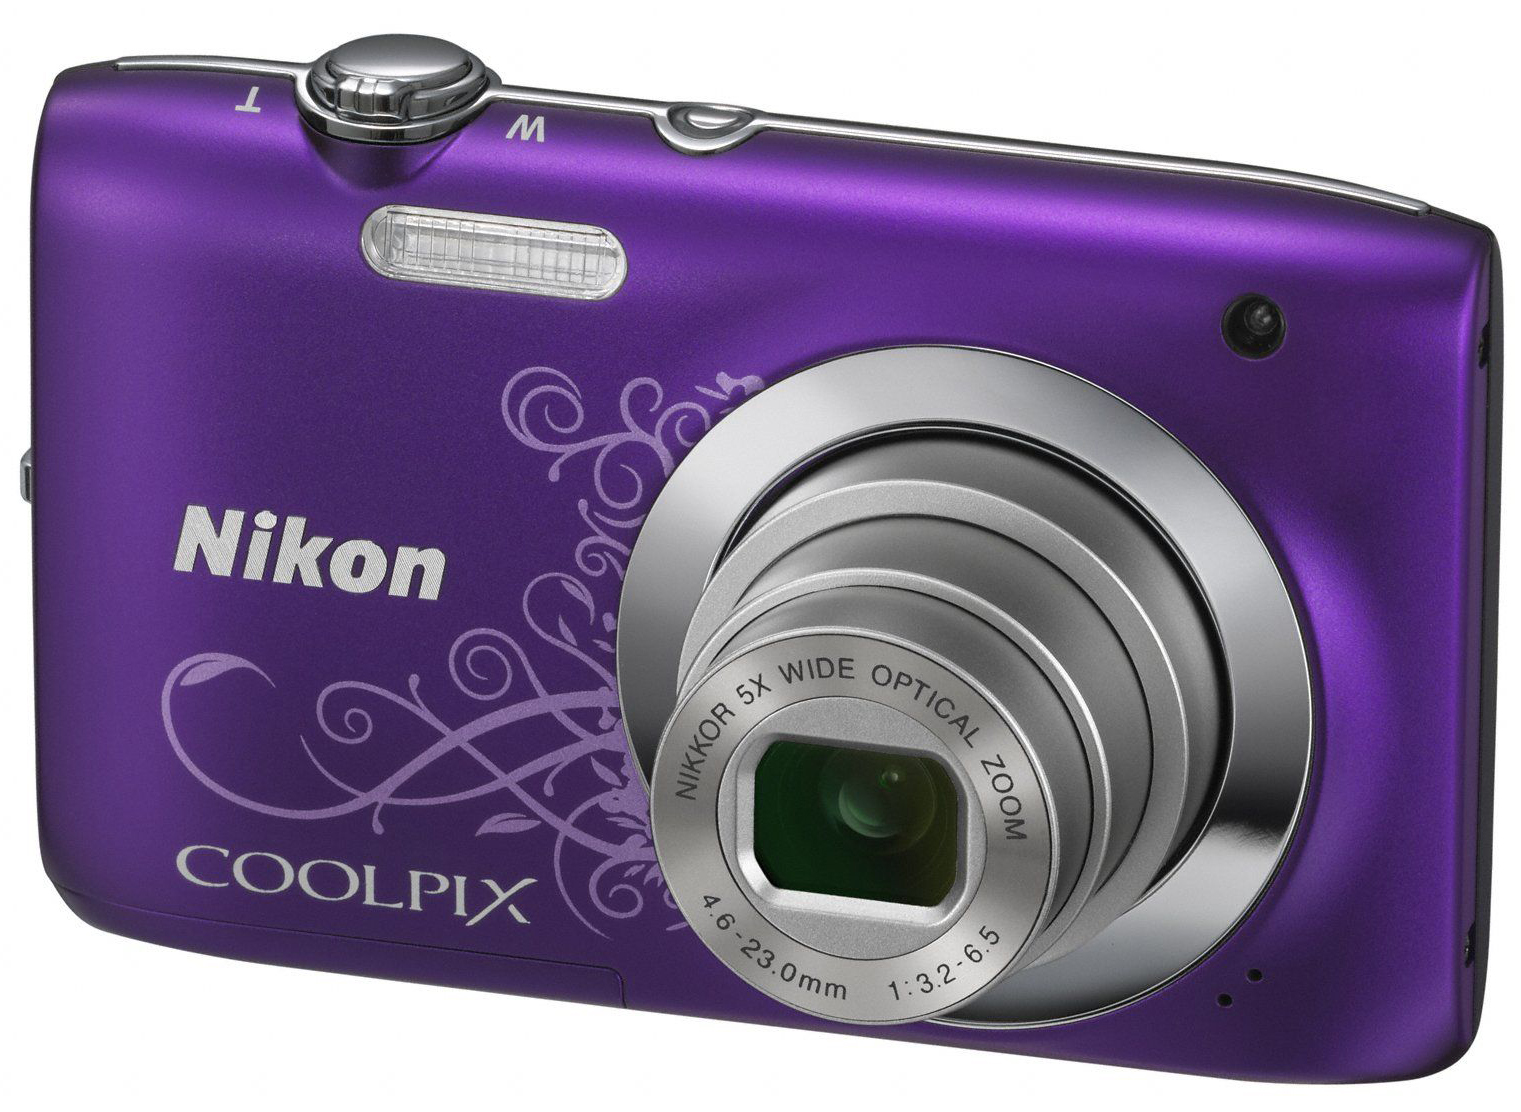 Nikon Cameras – An Industry Innovator